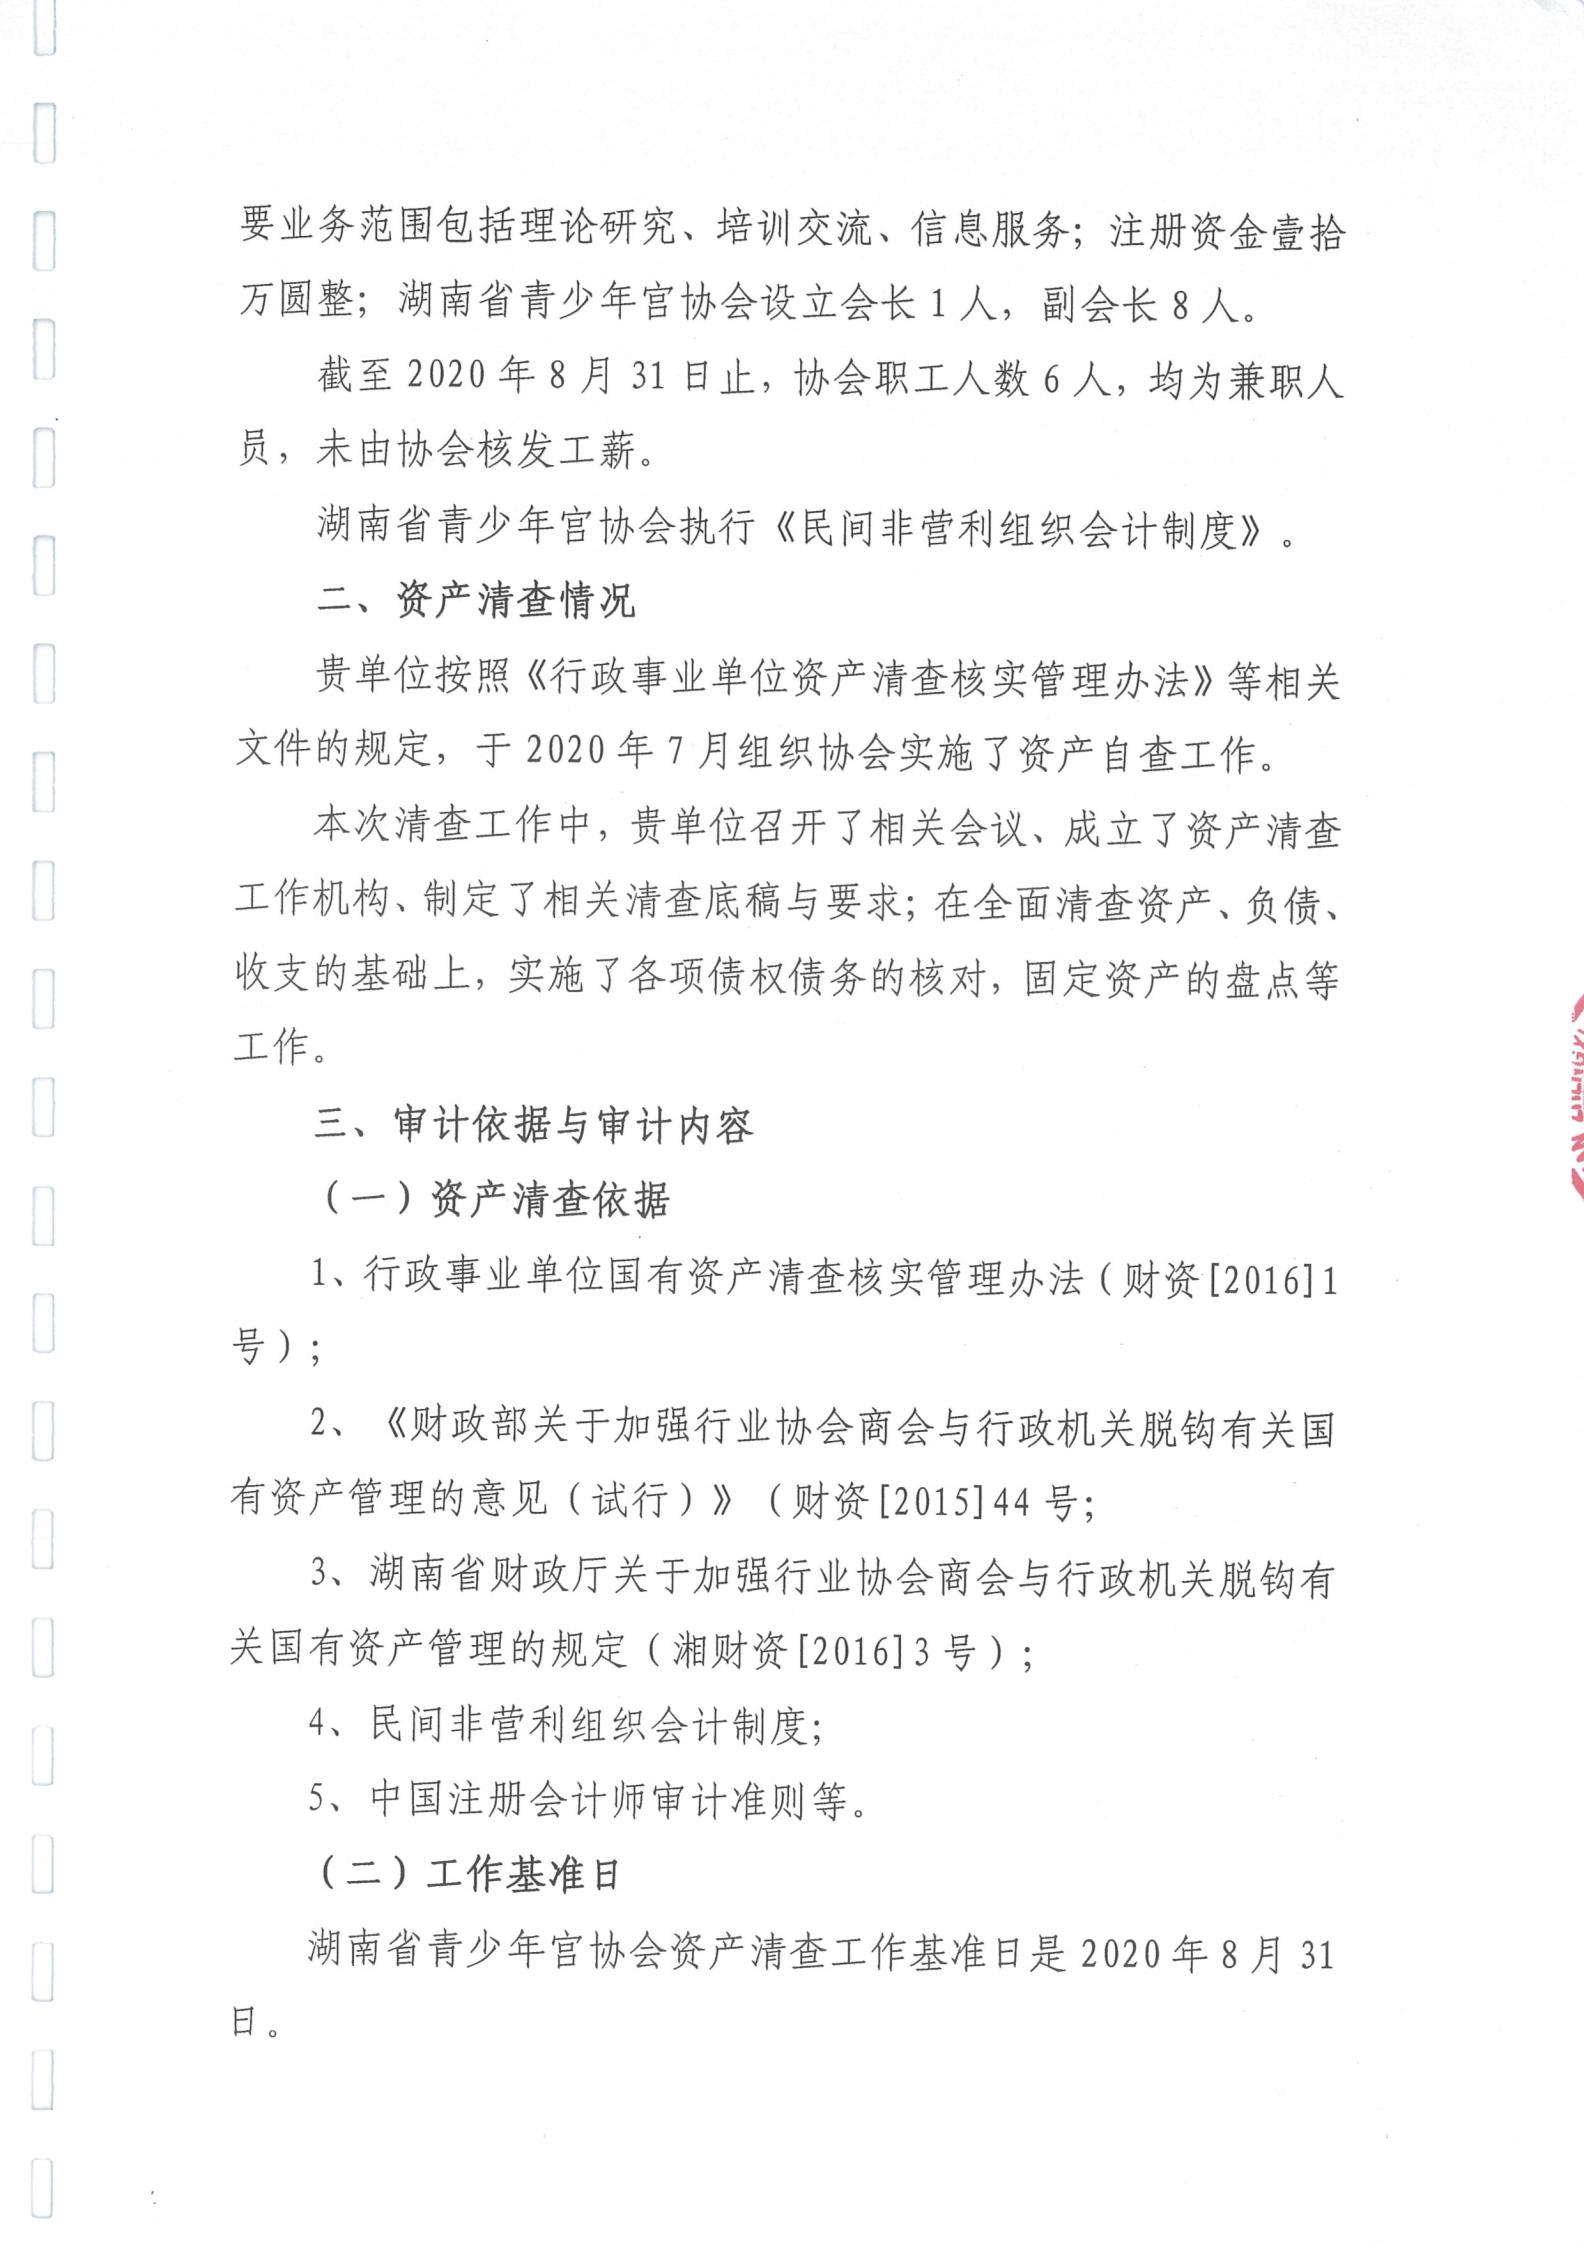 湖南省青少年宫协会资产清查专项审计报告_01.jpg